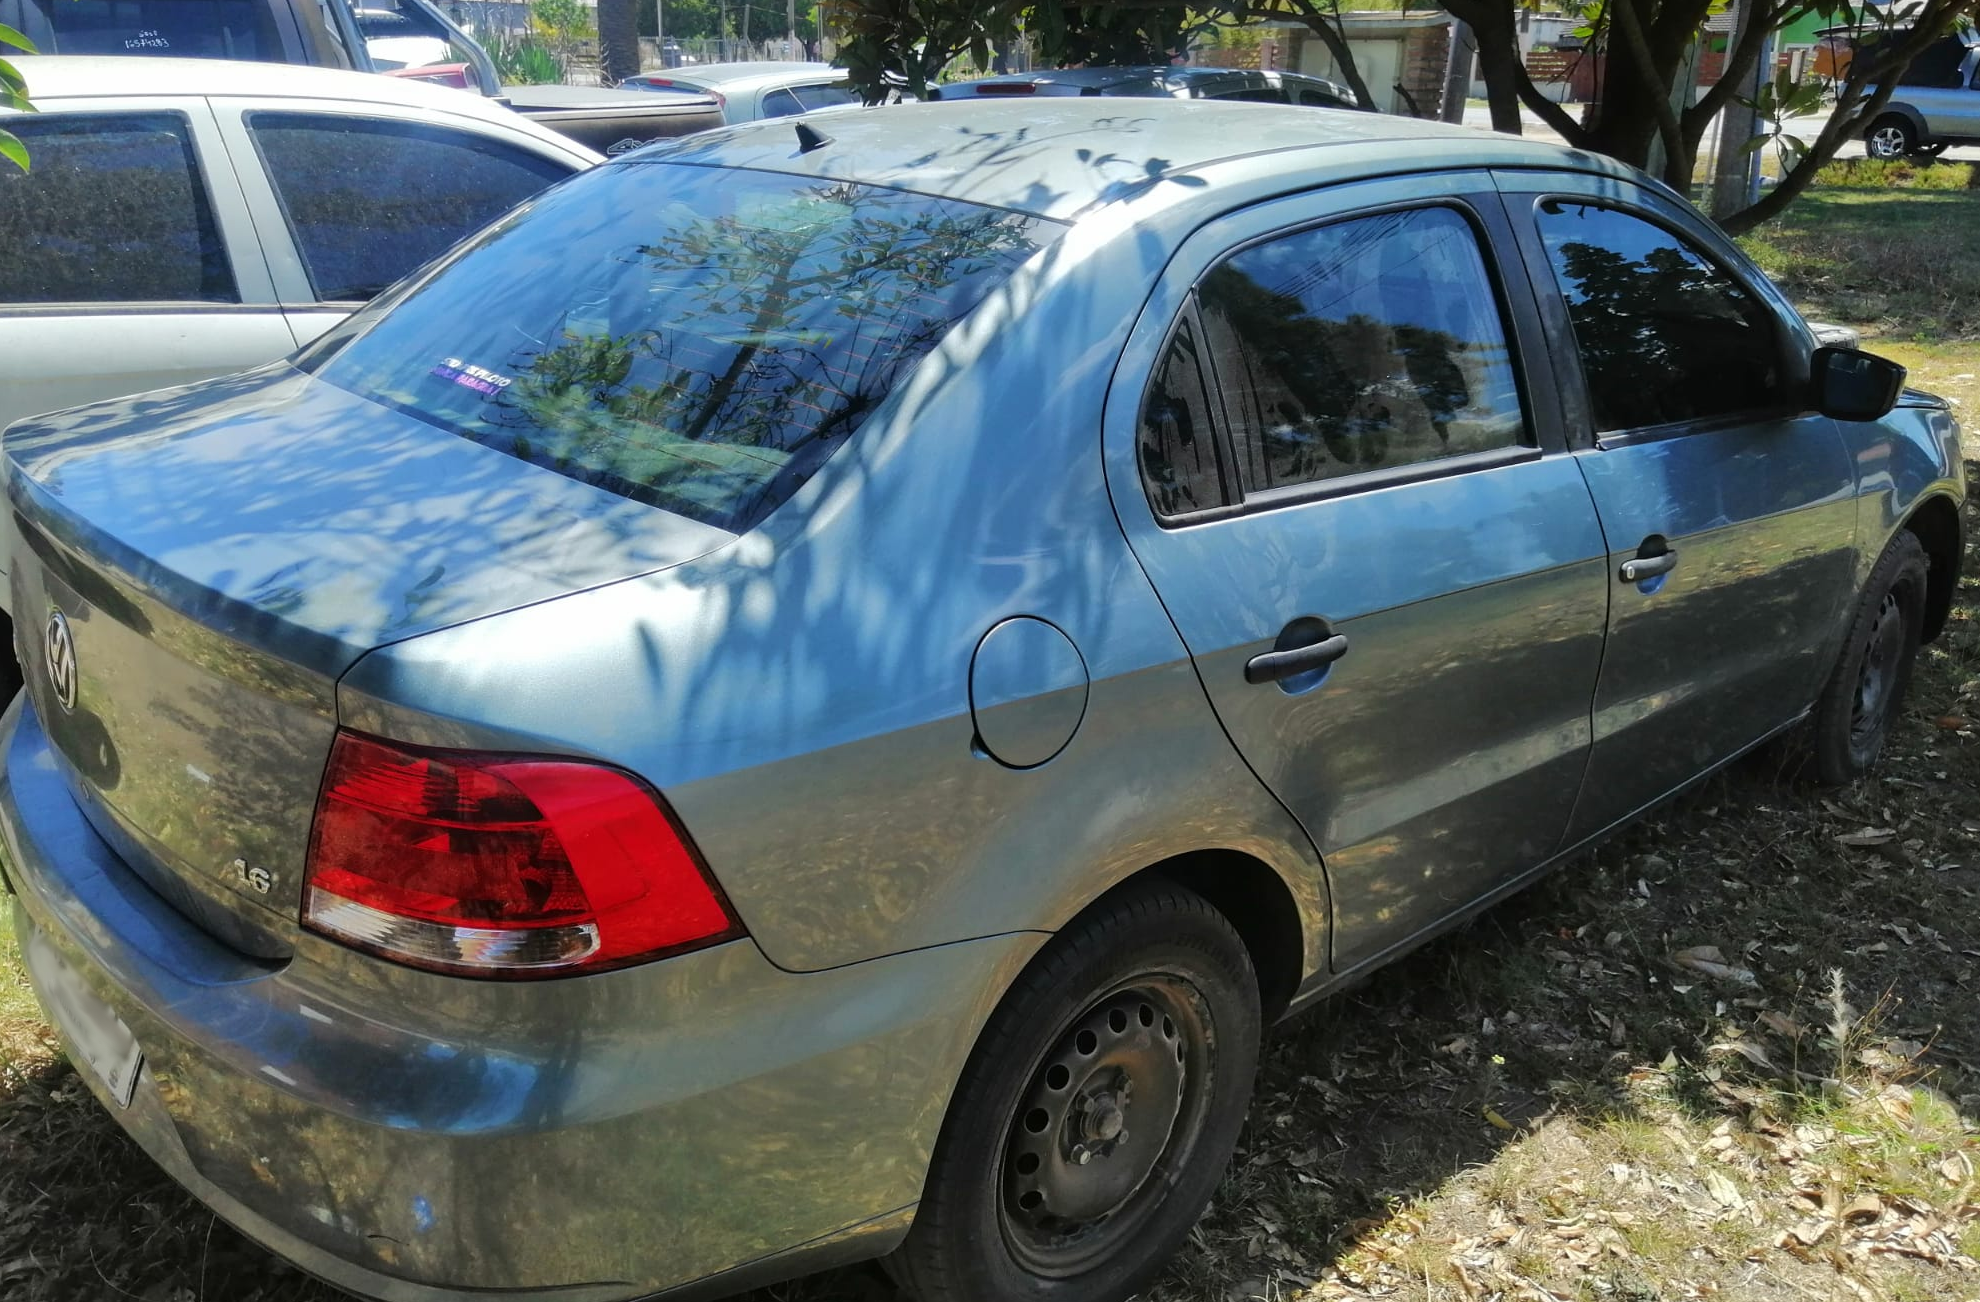 Incautan en Ciudad del Plata un auto robado en el barrio Colón de Montevideo